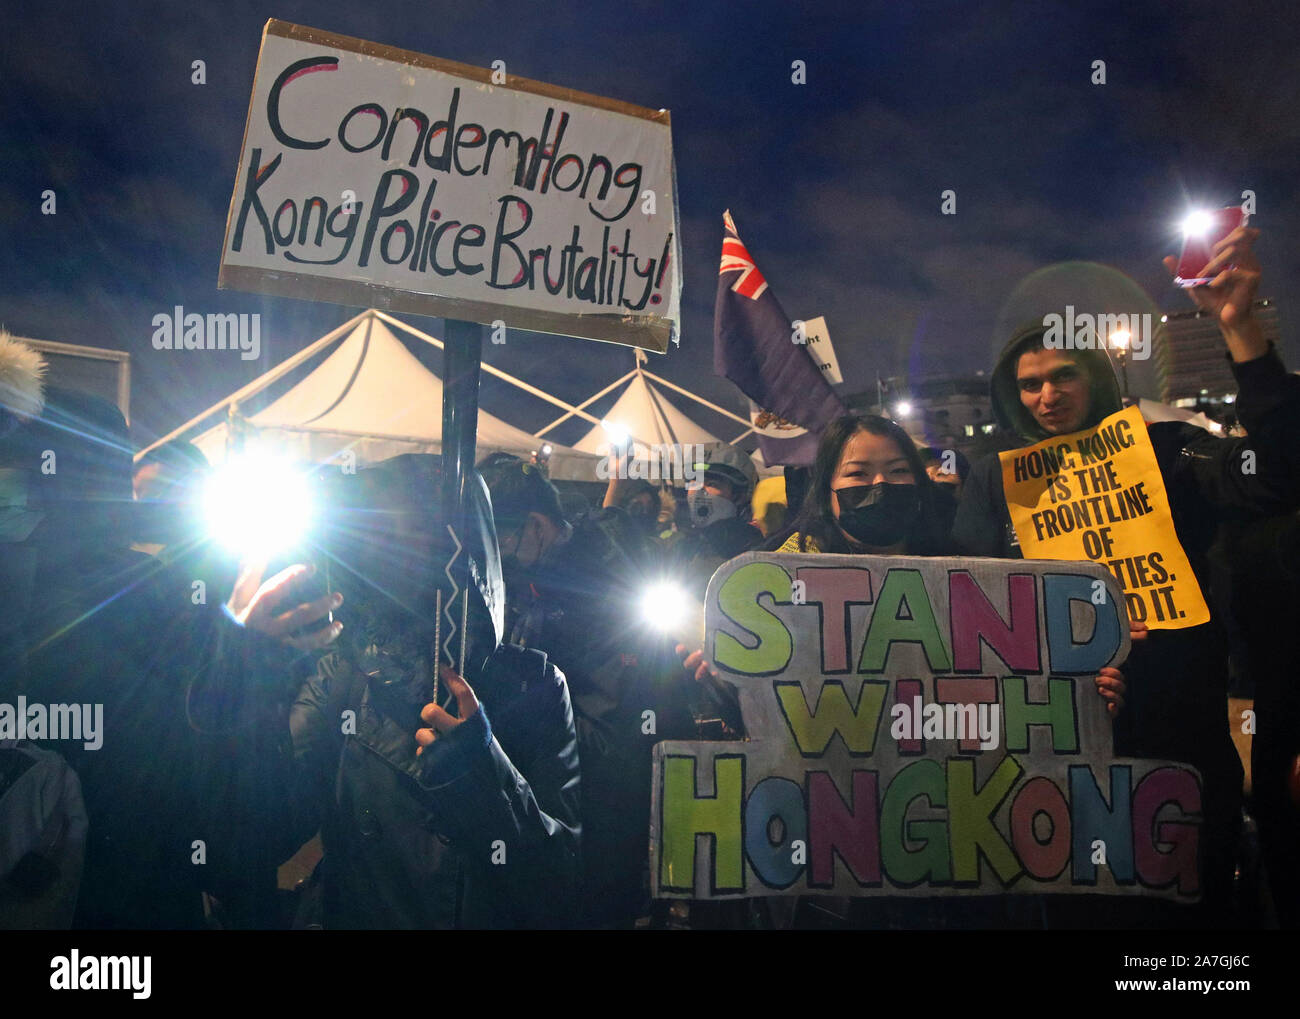 Hong Kong pro-democracy protesters taking part in a Hong Kong solidarity rally in Trafalgar Square, London. Stock Photo